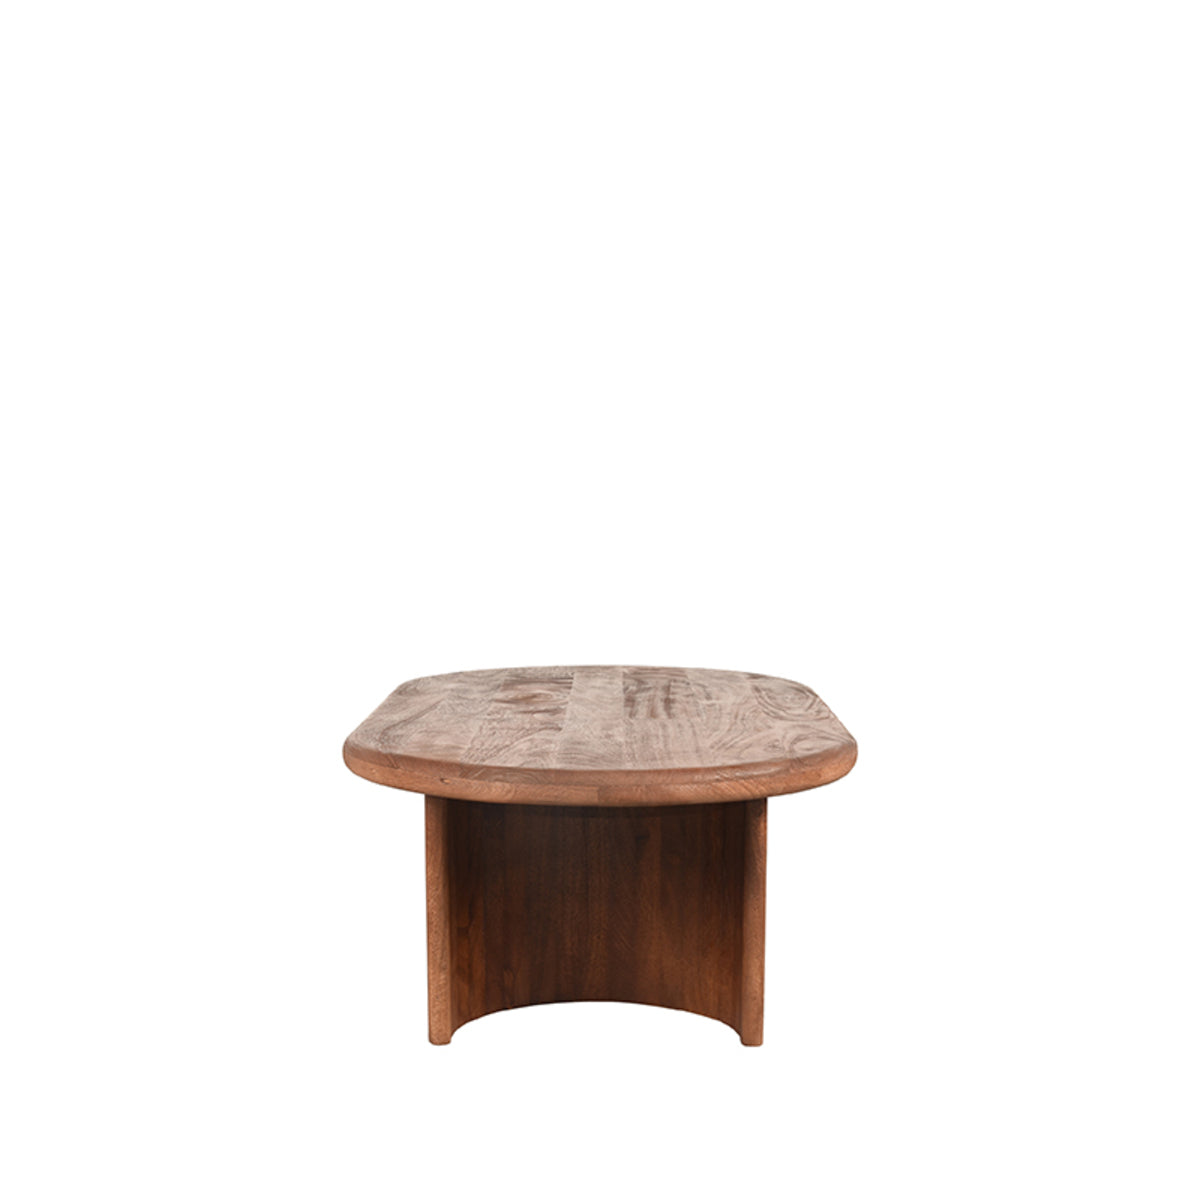 LABEL51 Coffee table Vito - Espresso - Mango wood - 110 cm